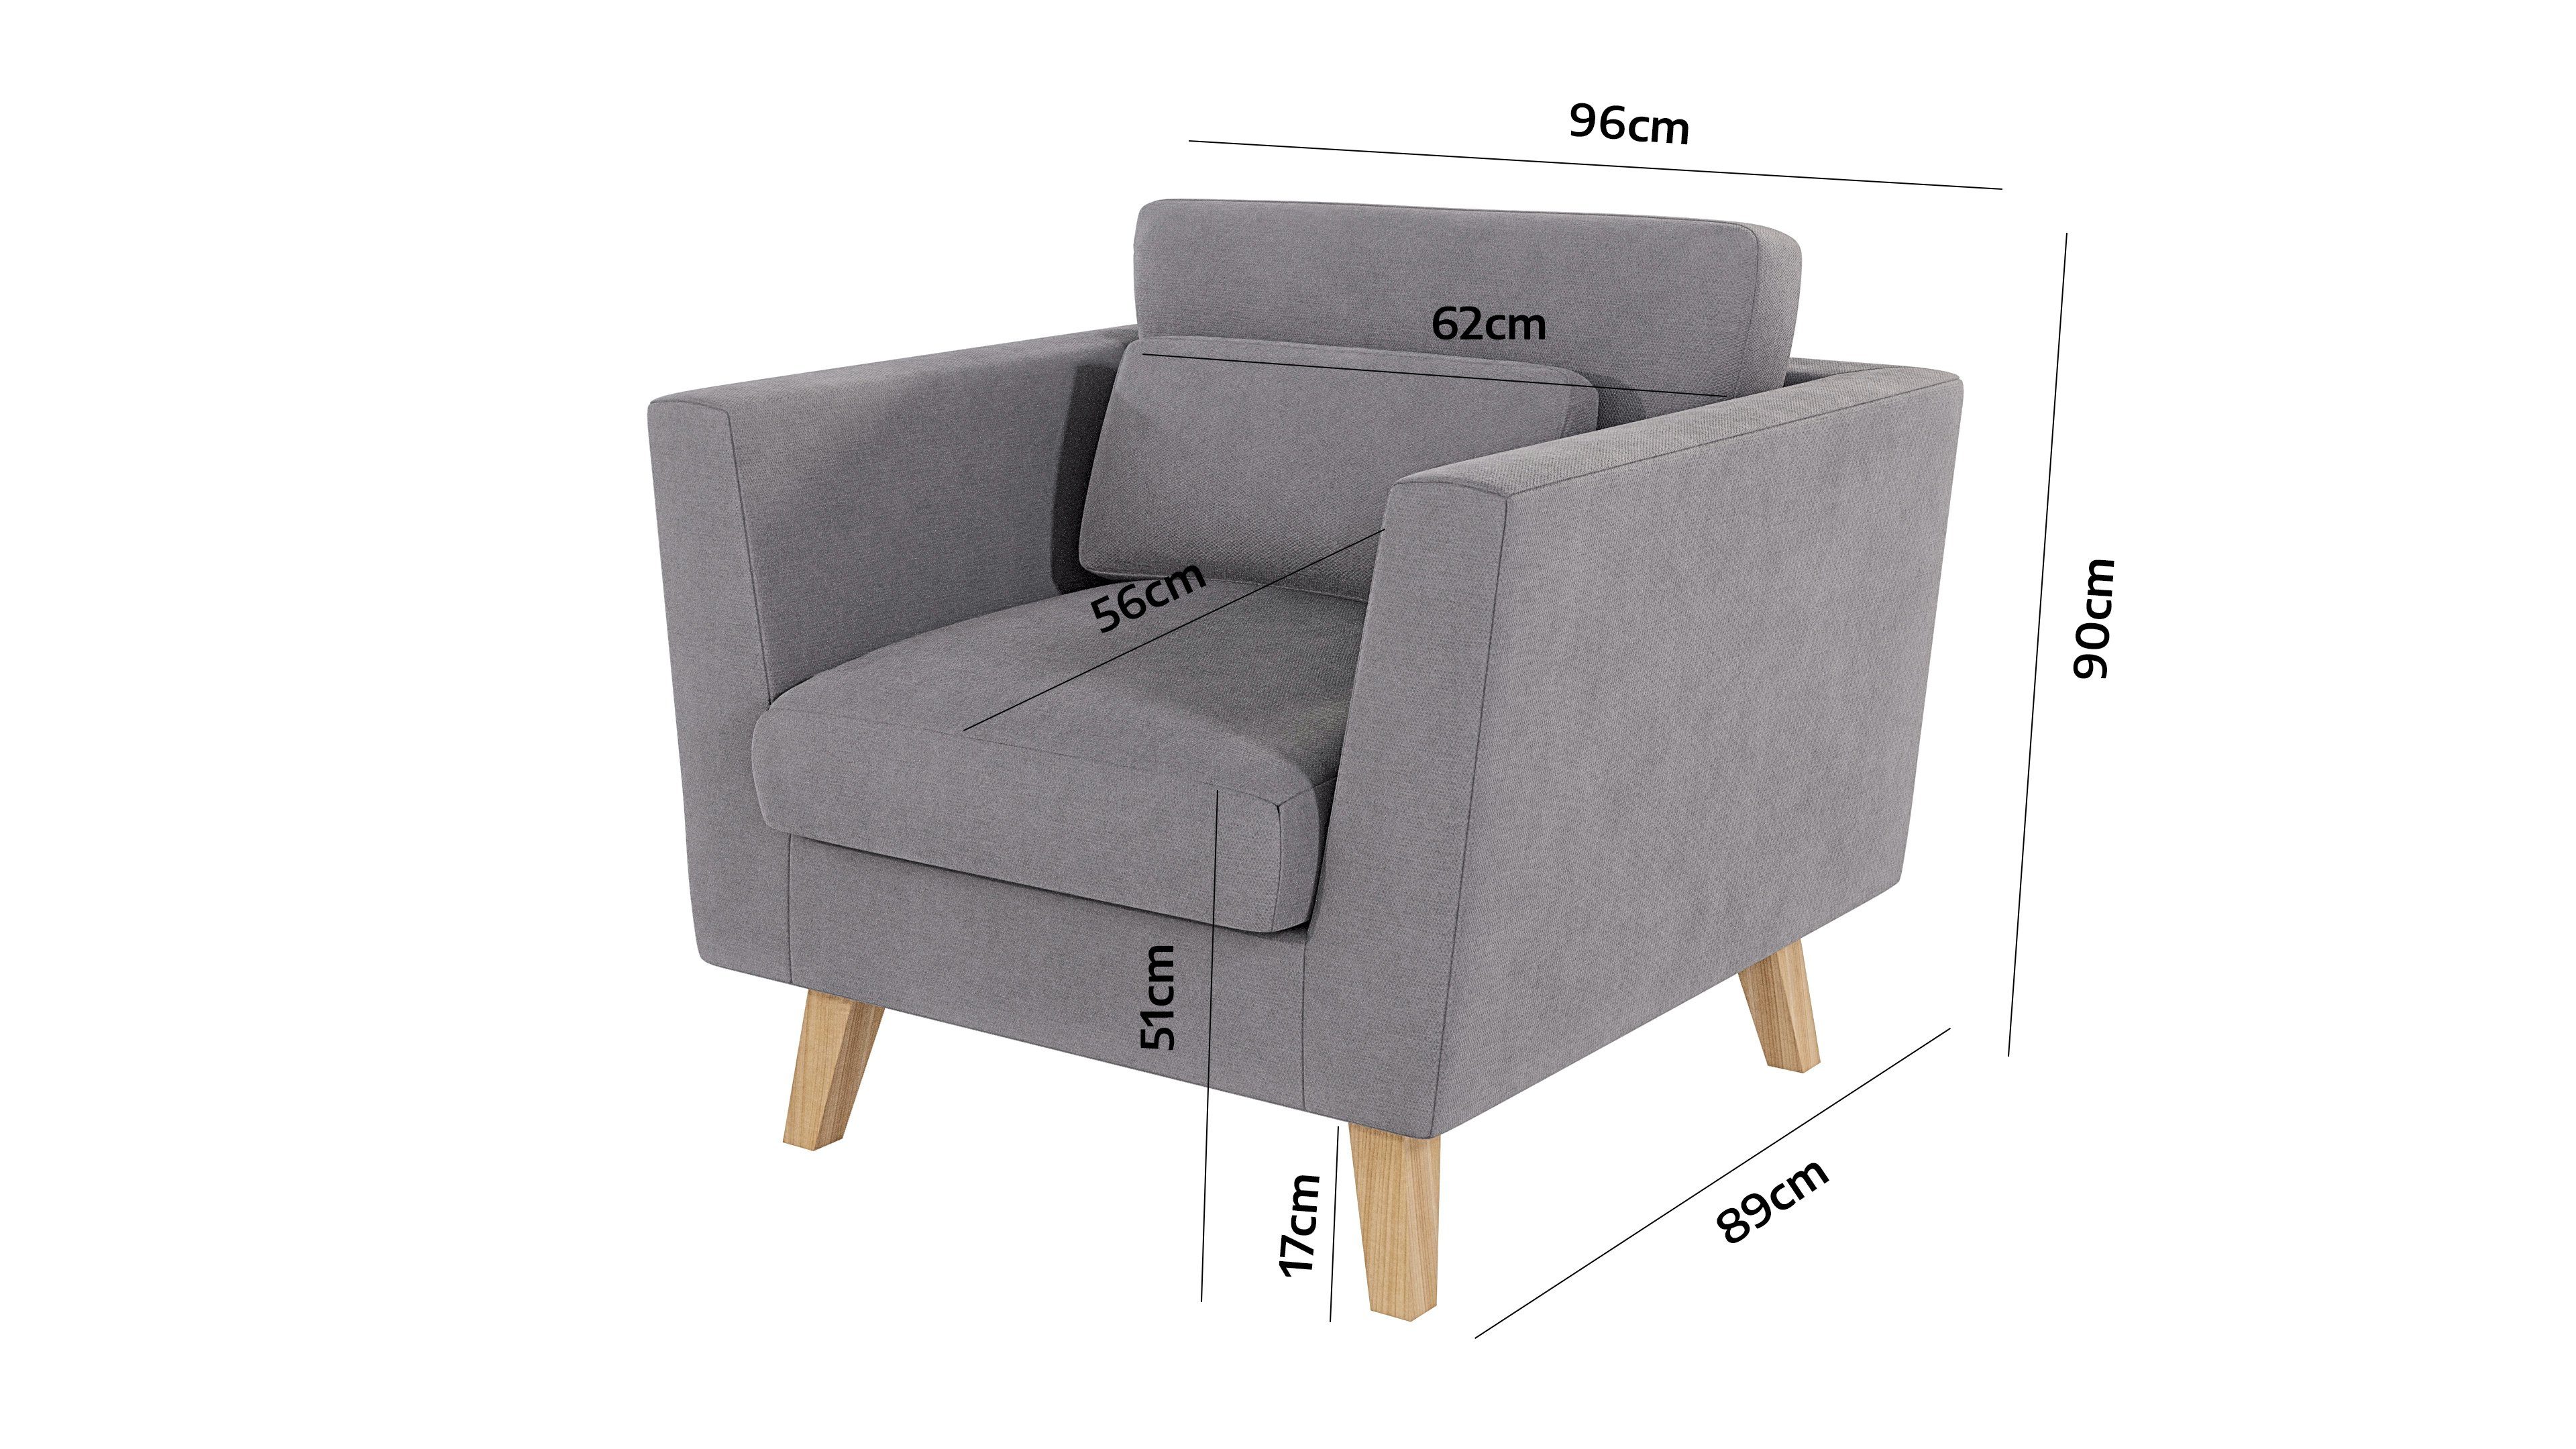 S-Style Angeles Wellenfederung Khaki Möbel im Braun skandinavischen - Design, mit Sessel